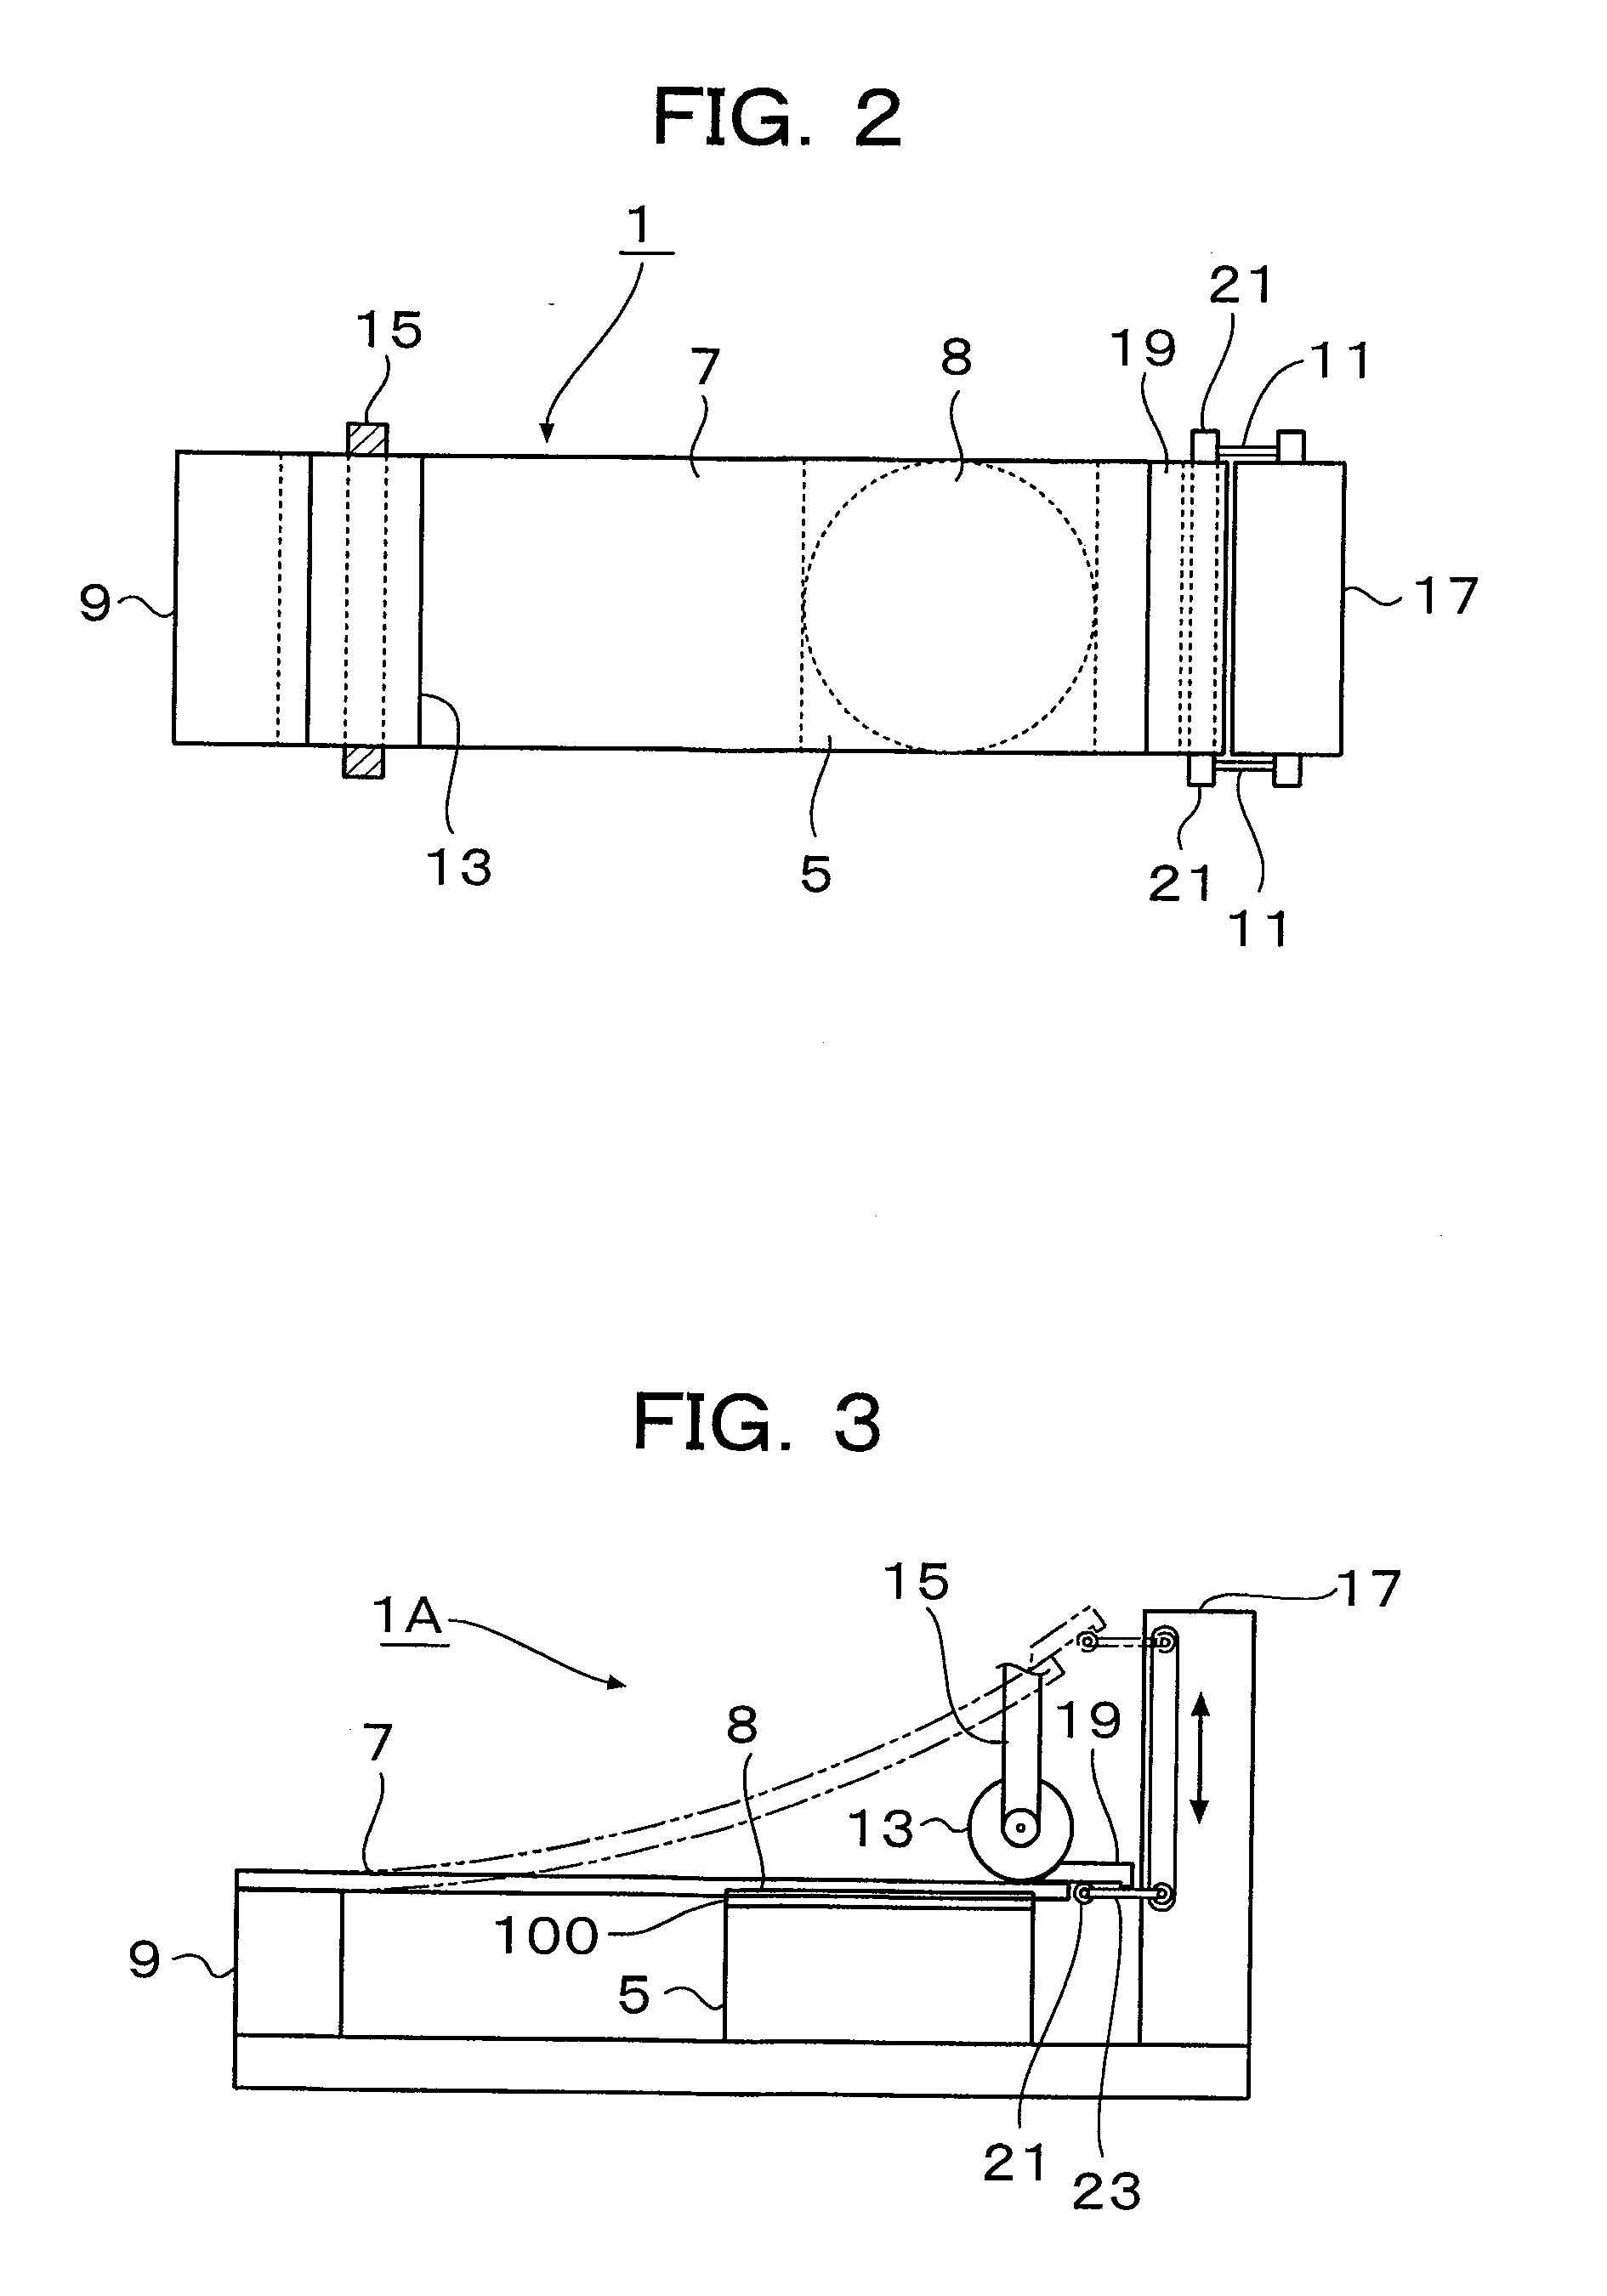 Fine-structure transfer apparatus